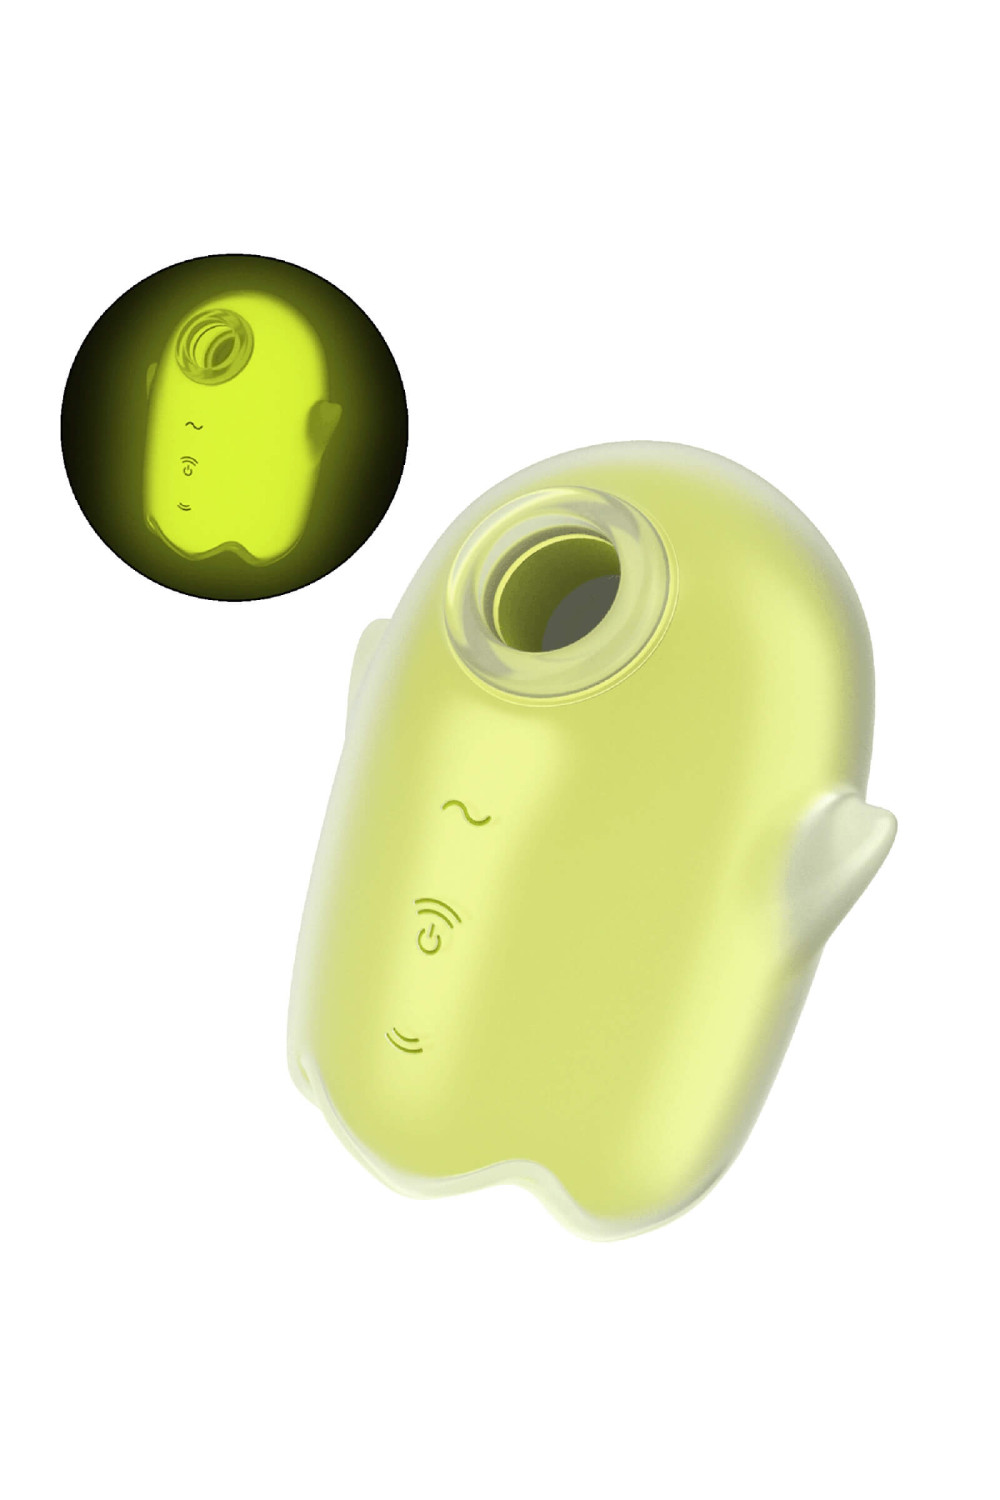 Satisfyer Glowing Ghost - svítící stimulátor klitorisu (žlutý)